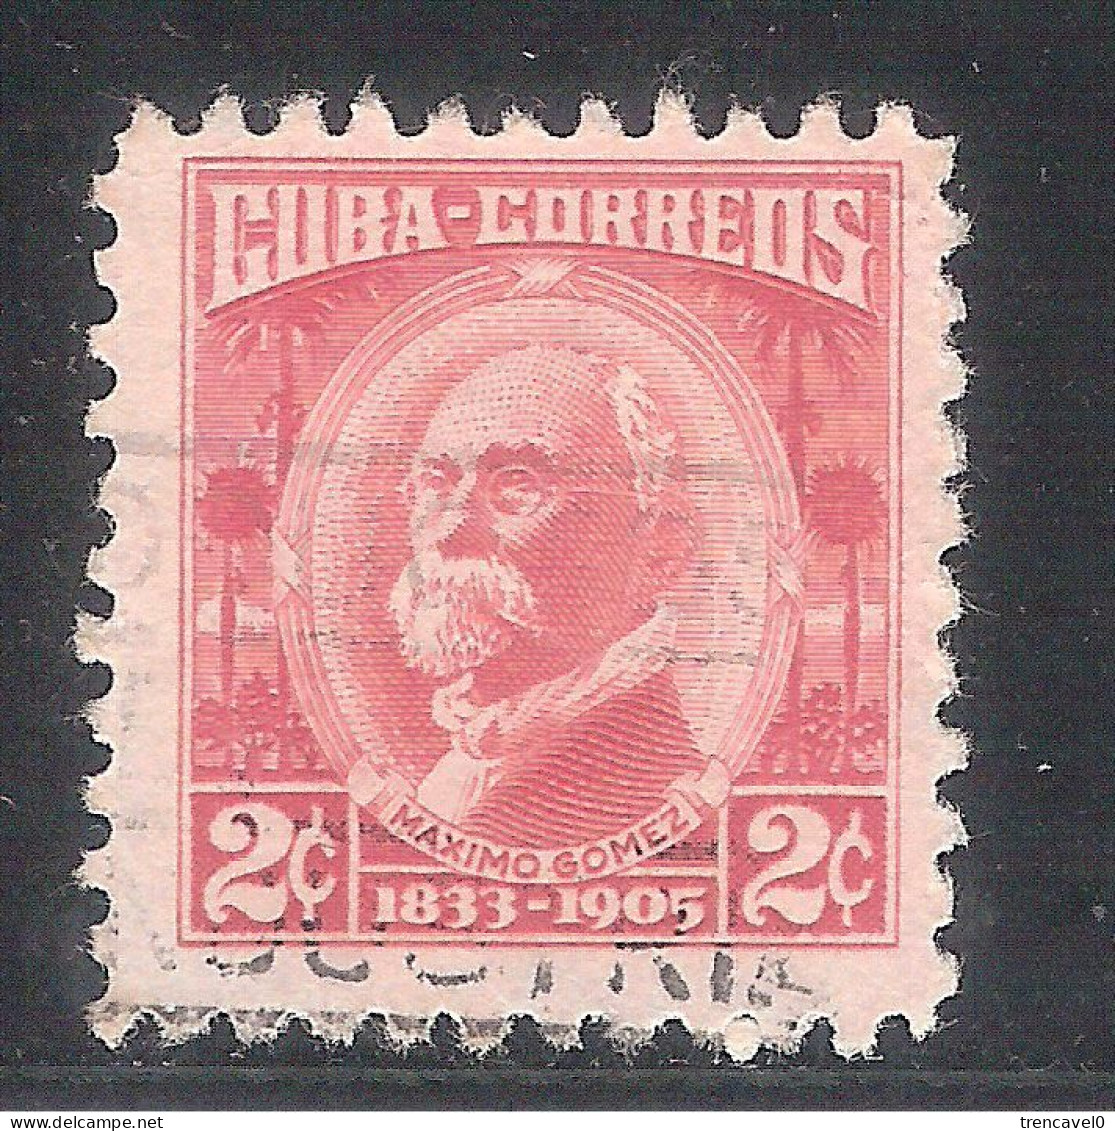 Cuba 1954- 1 Sello Usado Y Circulado - Máximo Gómez - Gebruikt